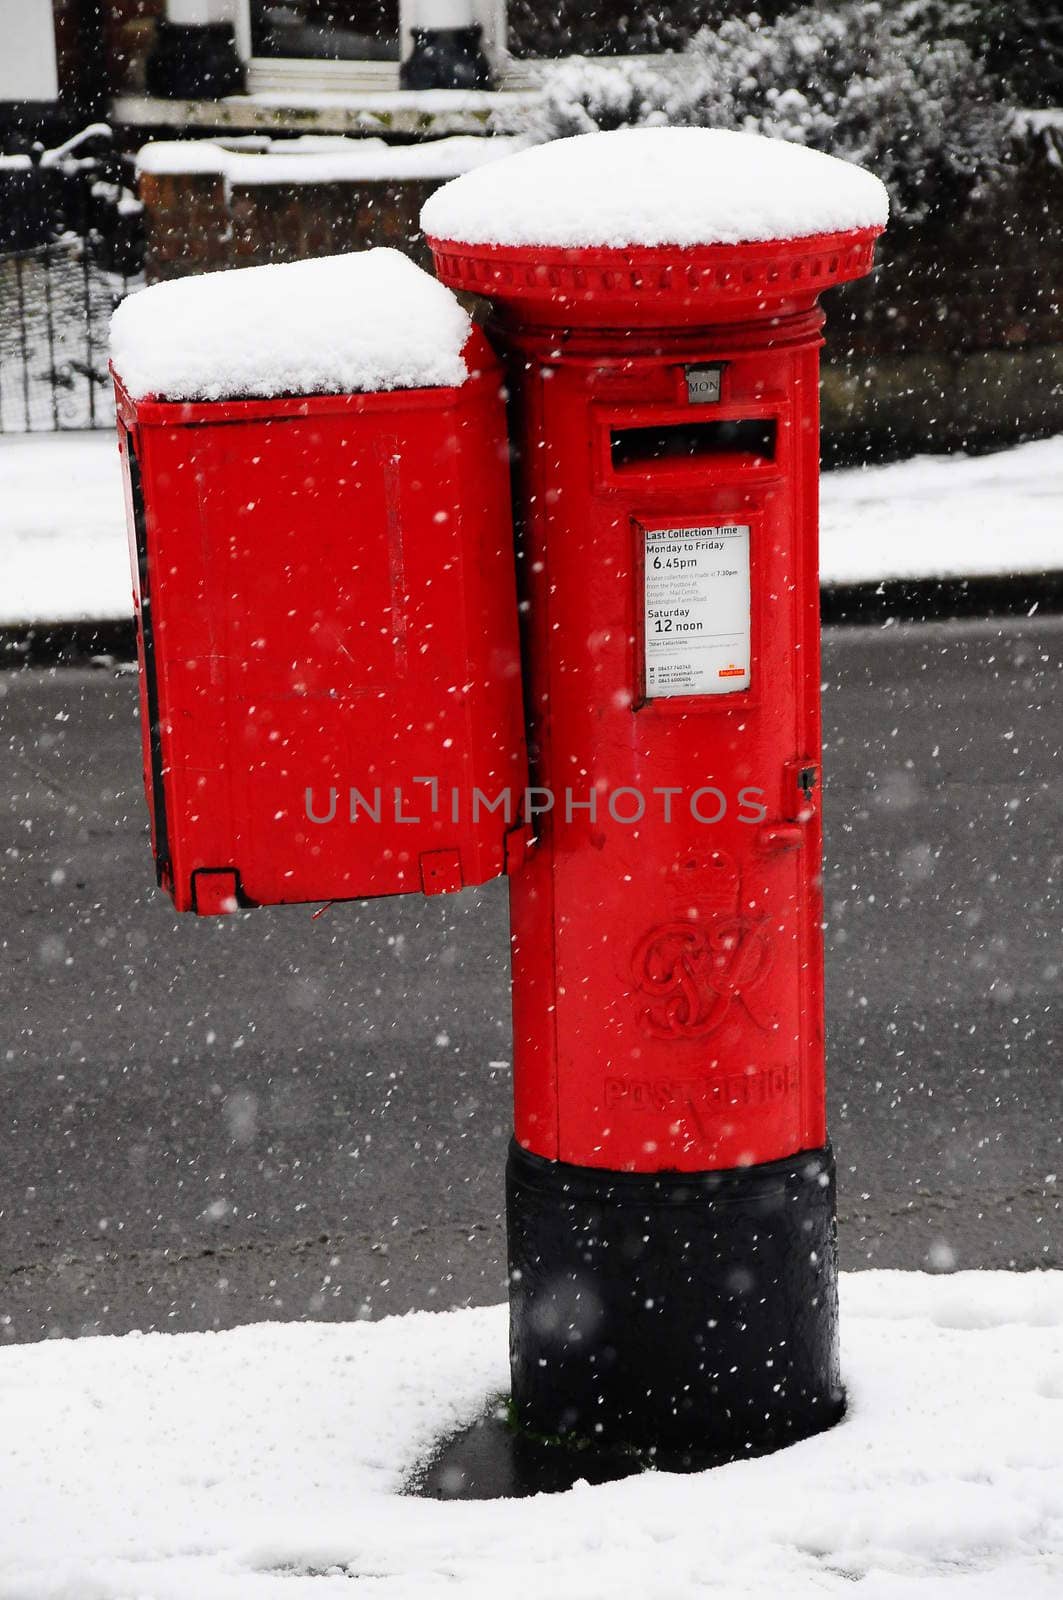 London pillar box in snowstorm